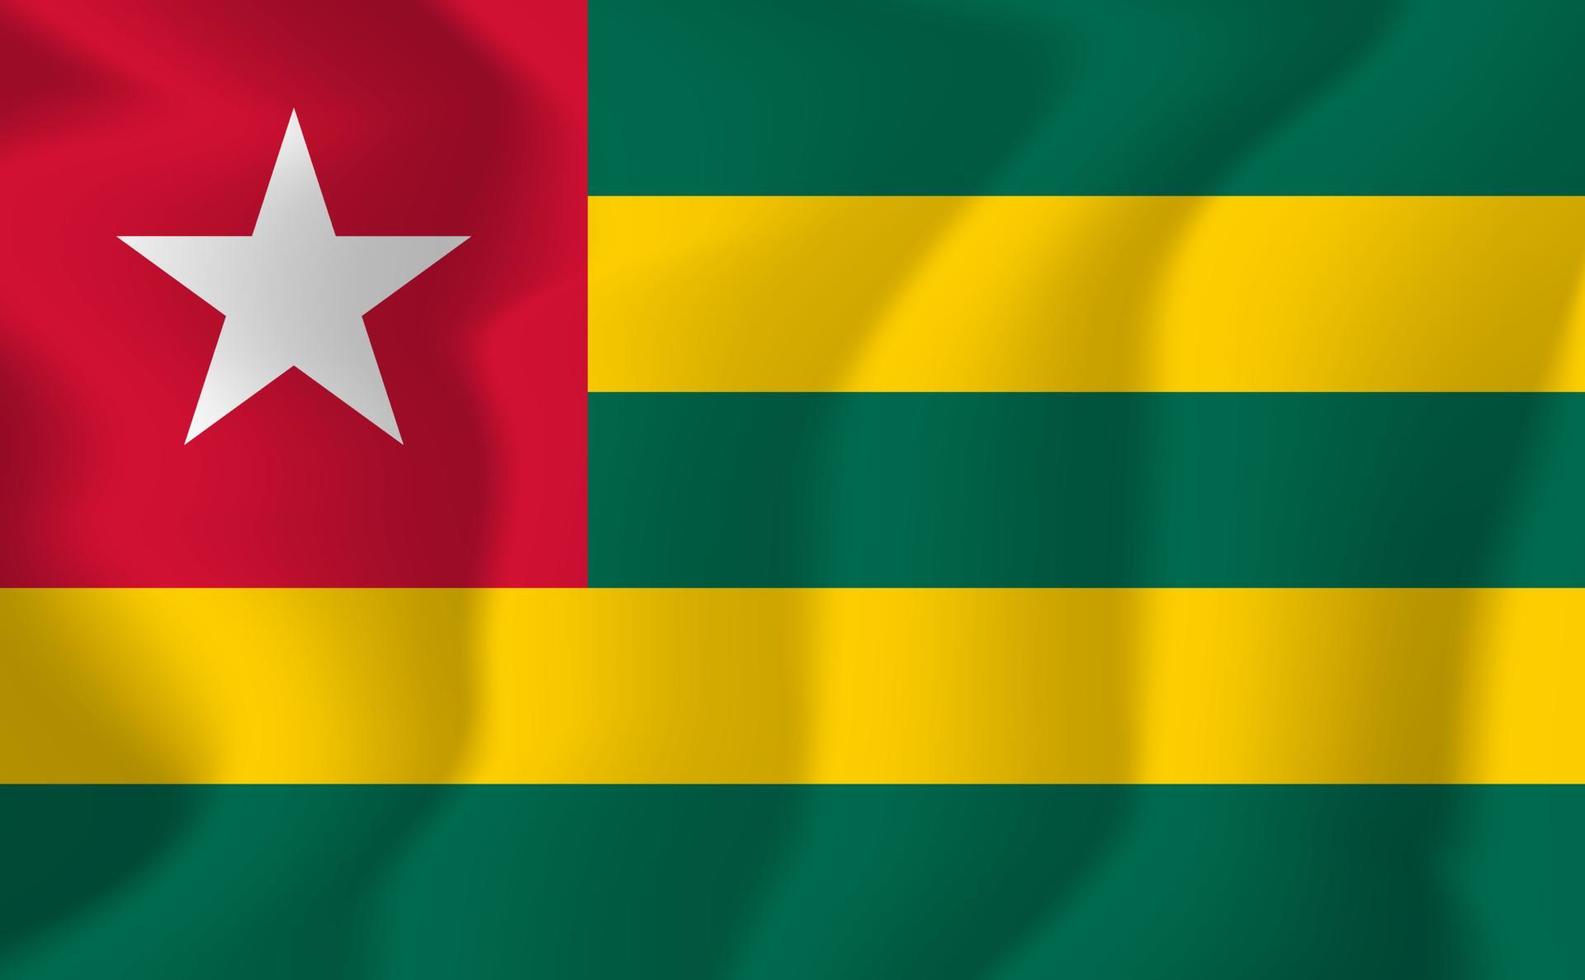 Togo National Waving Flag Background Illustration vector